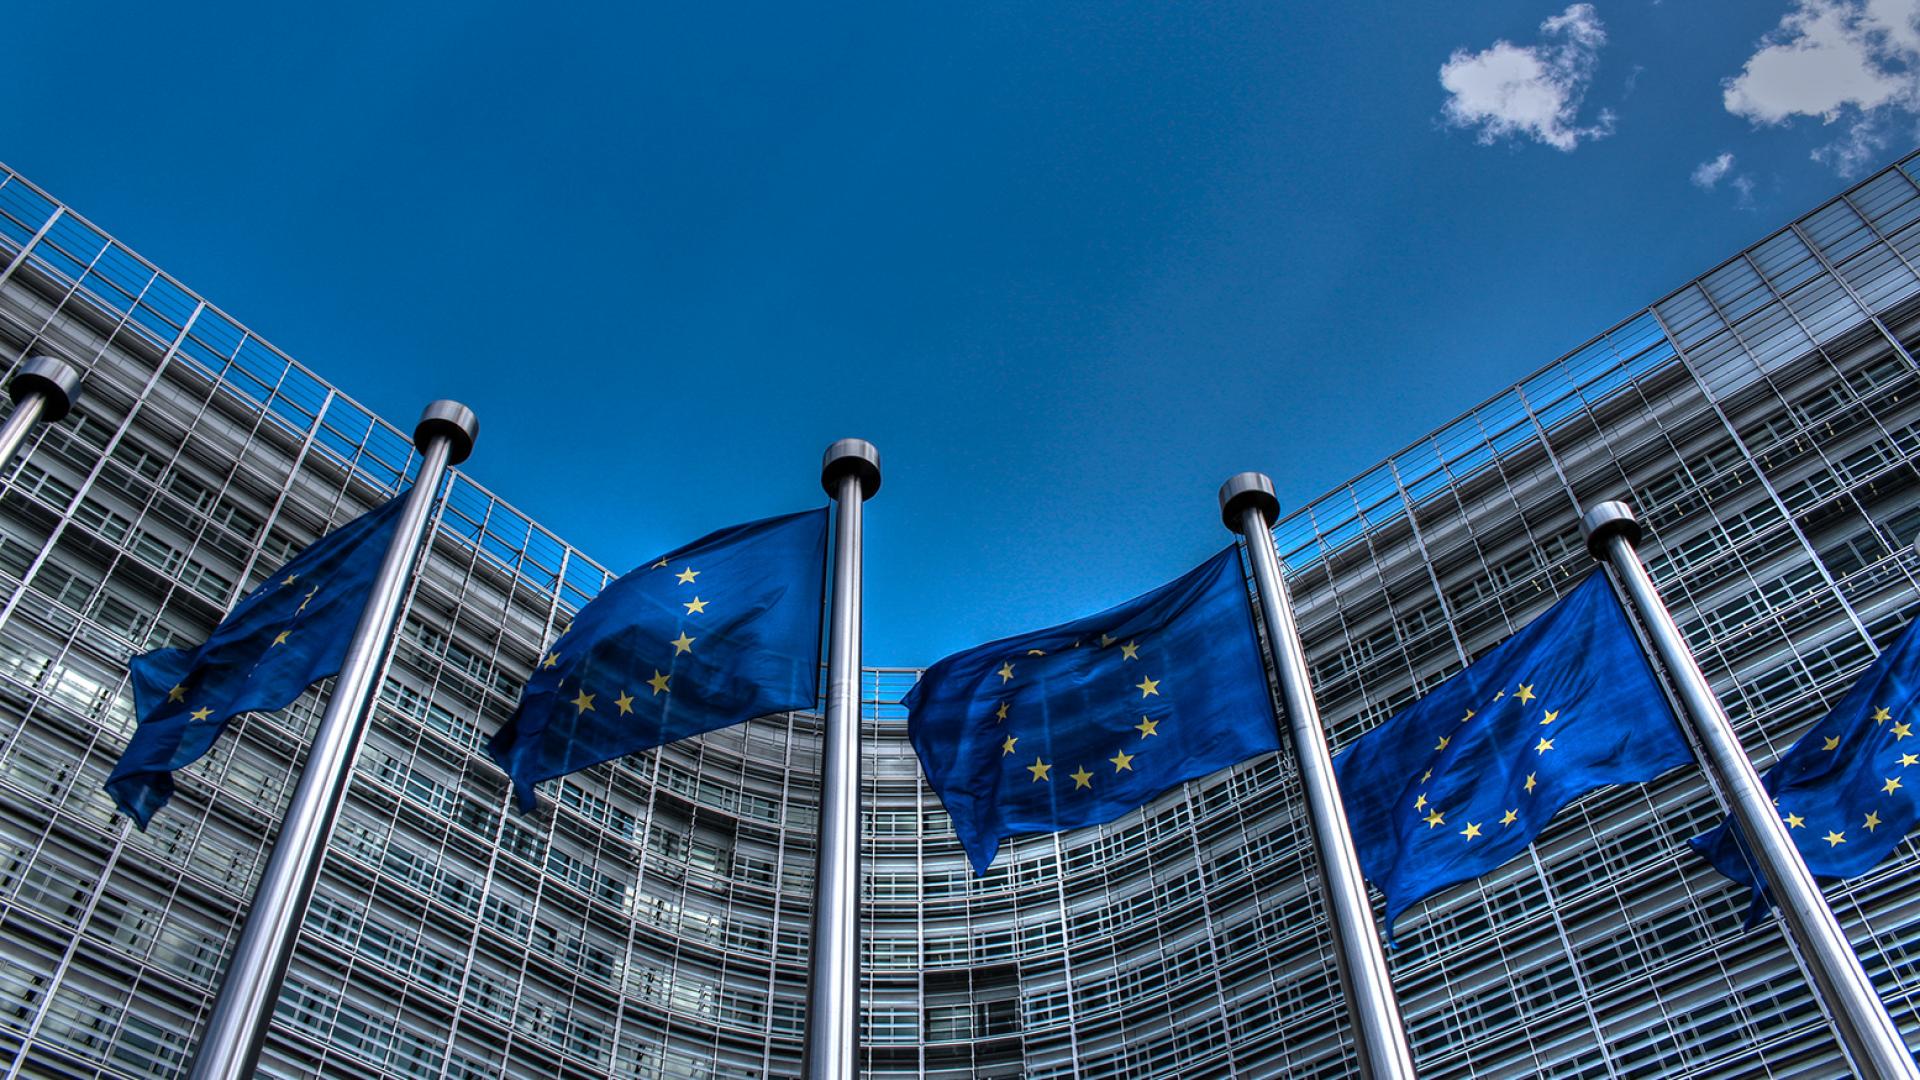 Cờ Liên minh châu Âu bên ngoài trụ sở Ủy ban châu Âu ở Brussels, Bỉ. Ảnh: Eumetsat.